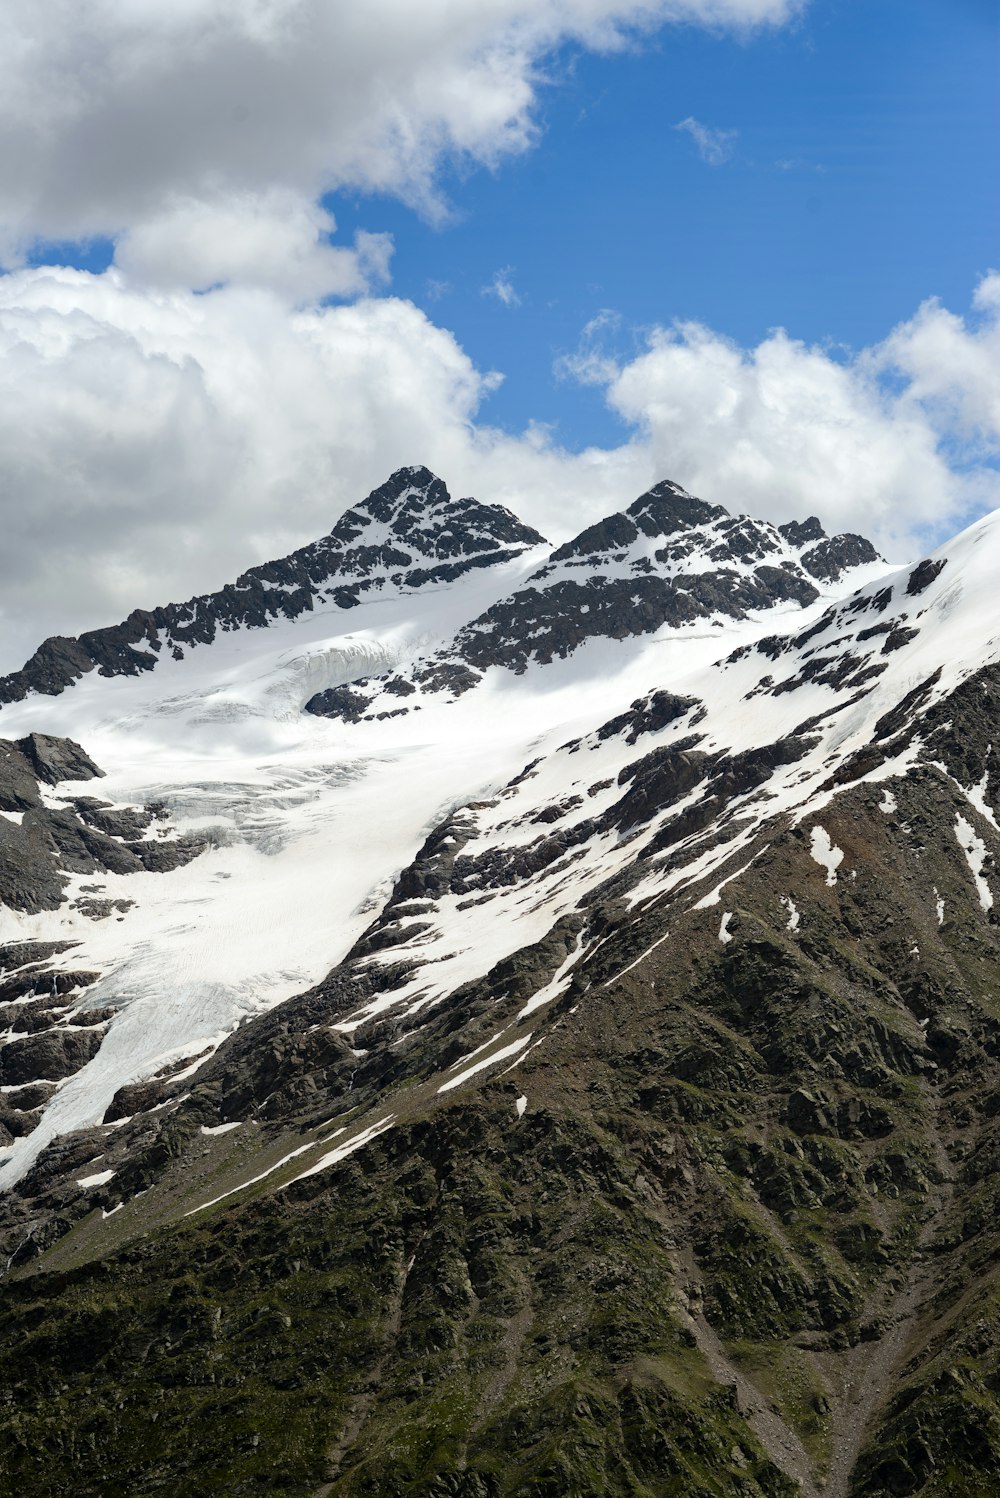 Una catena montuosa coperta di neve sotto un cielo blu nuvoloso